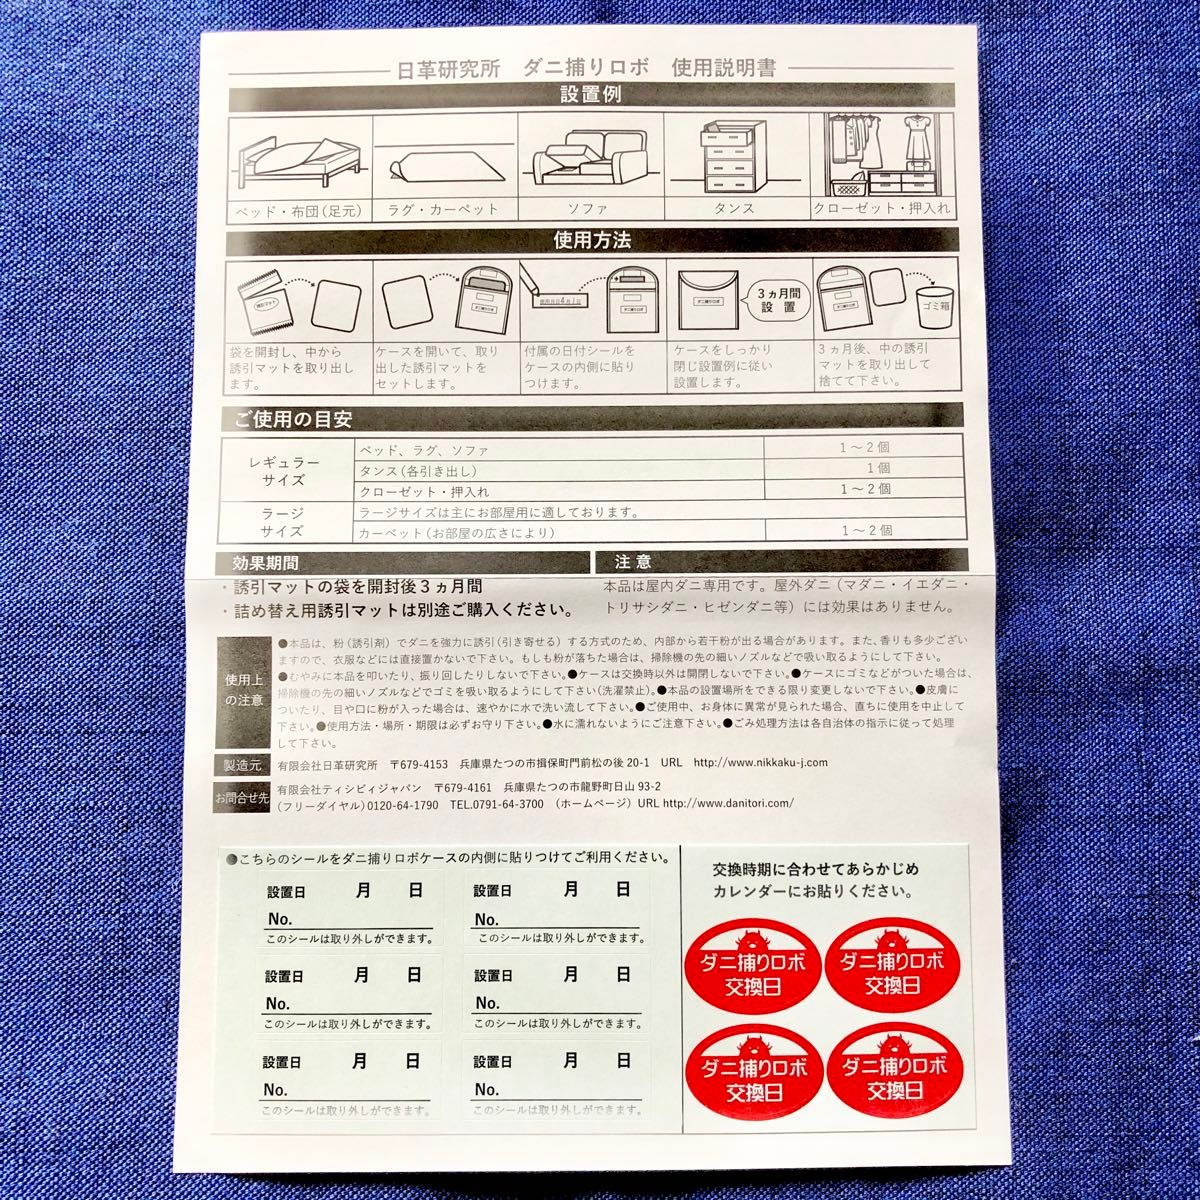 180☆新品 R2セット☆ ダニ捕りロボ マット&ソフトケース レギュラーサイズ